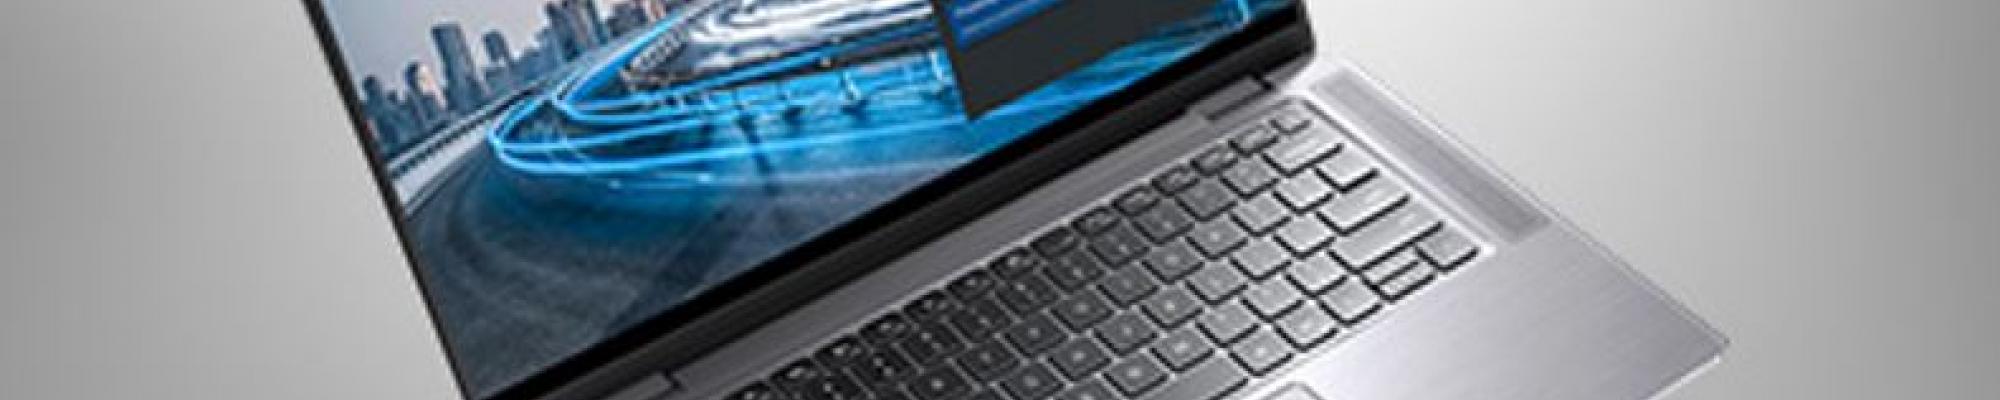 Dell Latitude 9510: een nieuwe pc die leert van uw gedrag